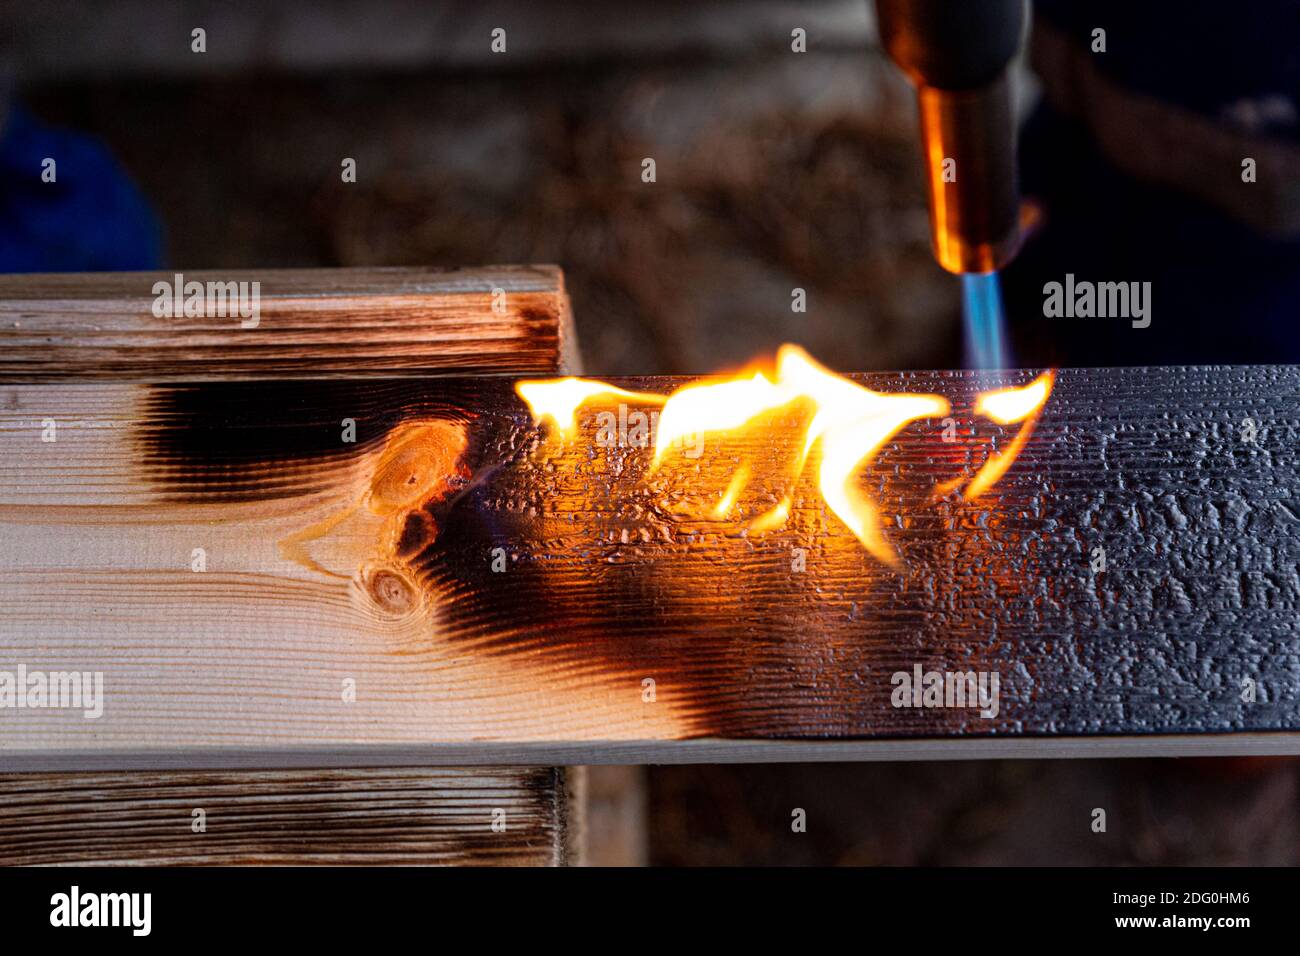 Lavorazione del legno mediante combustione con bruciatore a gas, fuoco aperto, spazzolatura. Concetto di invecchiamento artificiale di prodotti in legno. Foto Stock